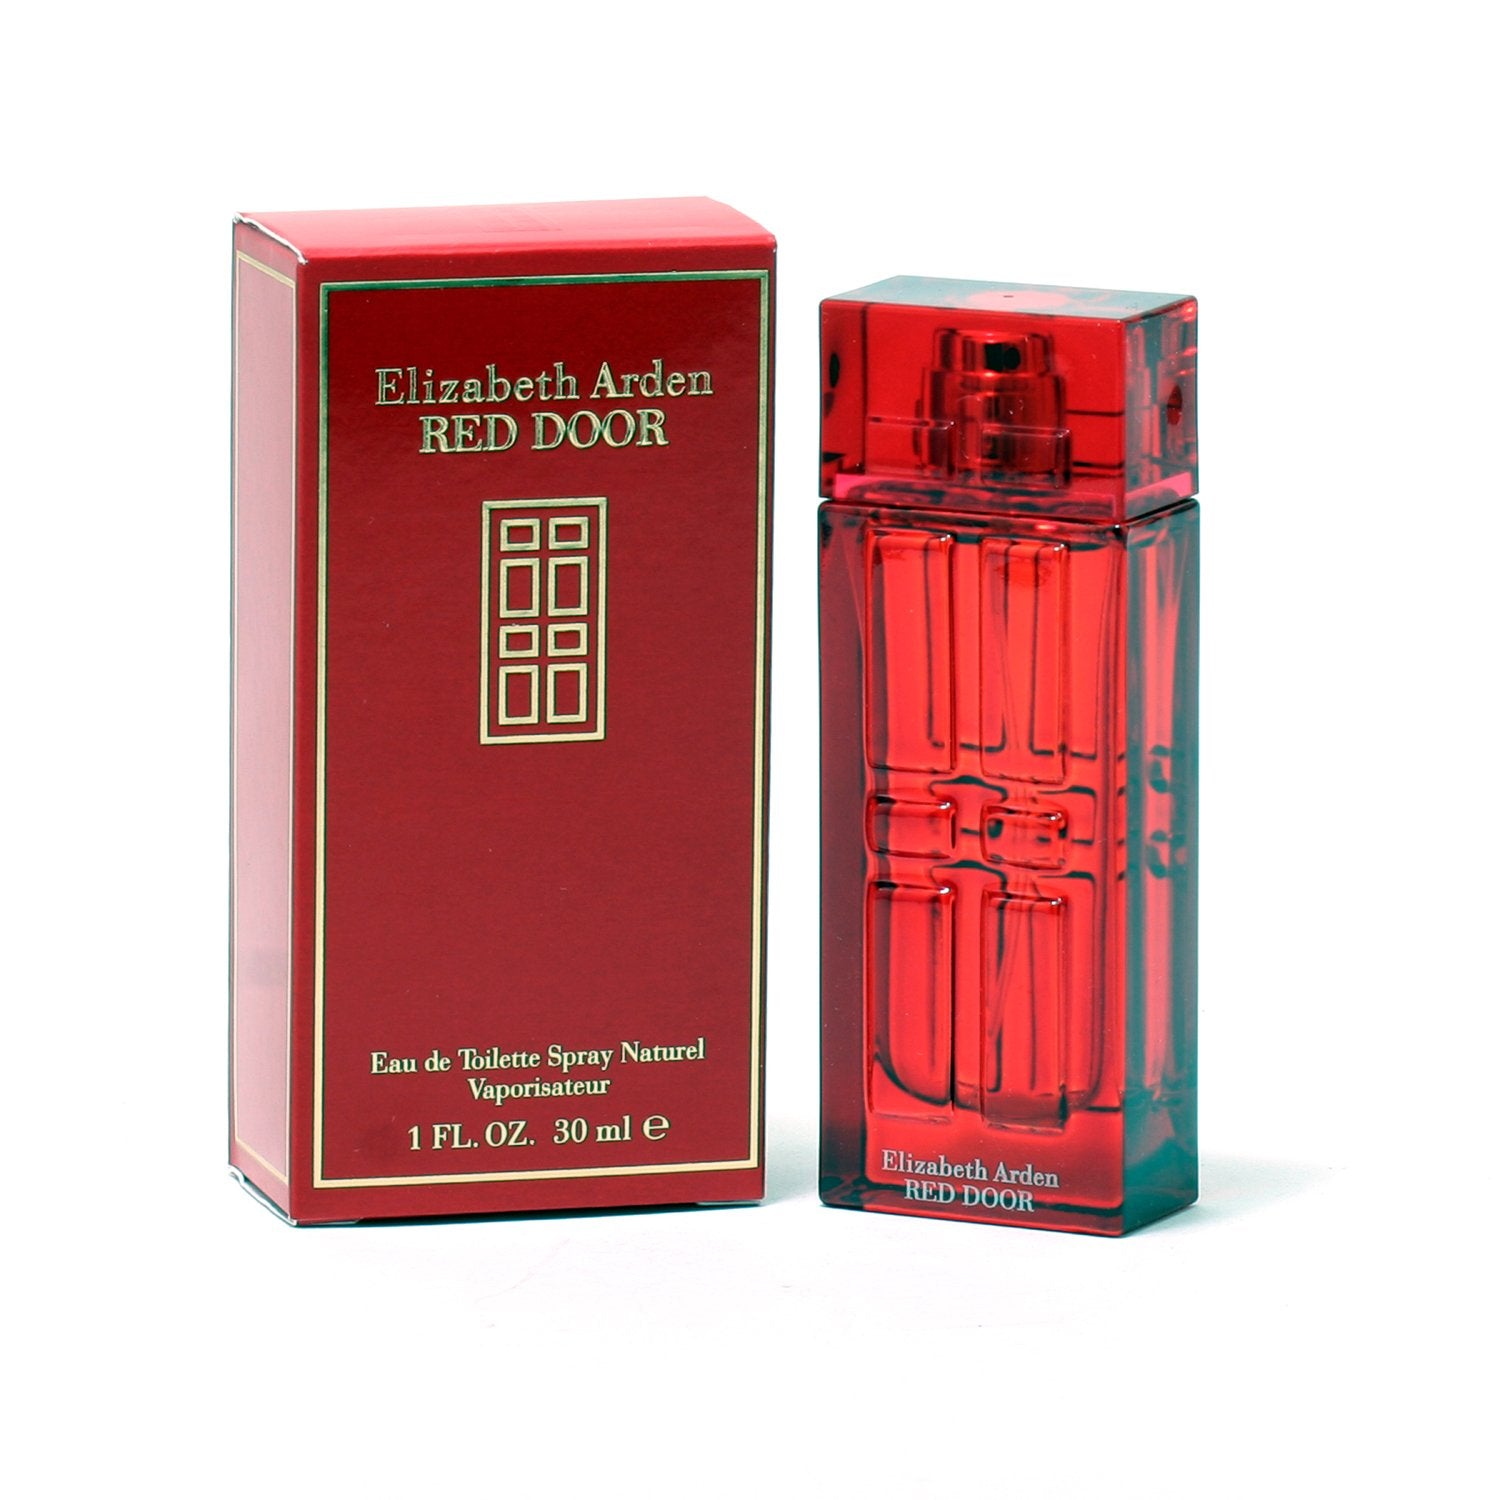 Perfume - RED DOOR FOR WOMEN BY ELIZABETH ARDEN - EAU DE TOILETTE SPRAY